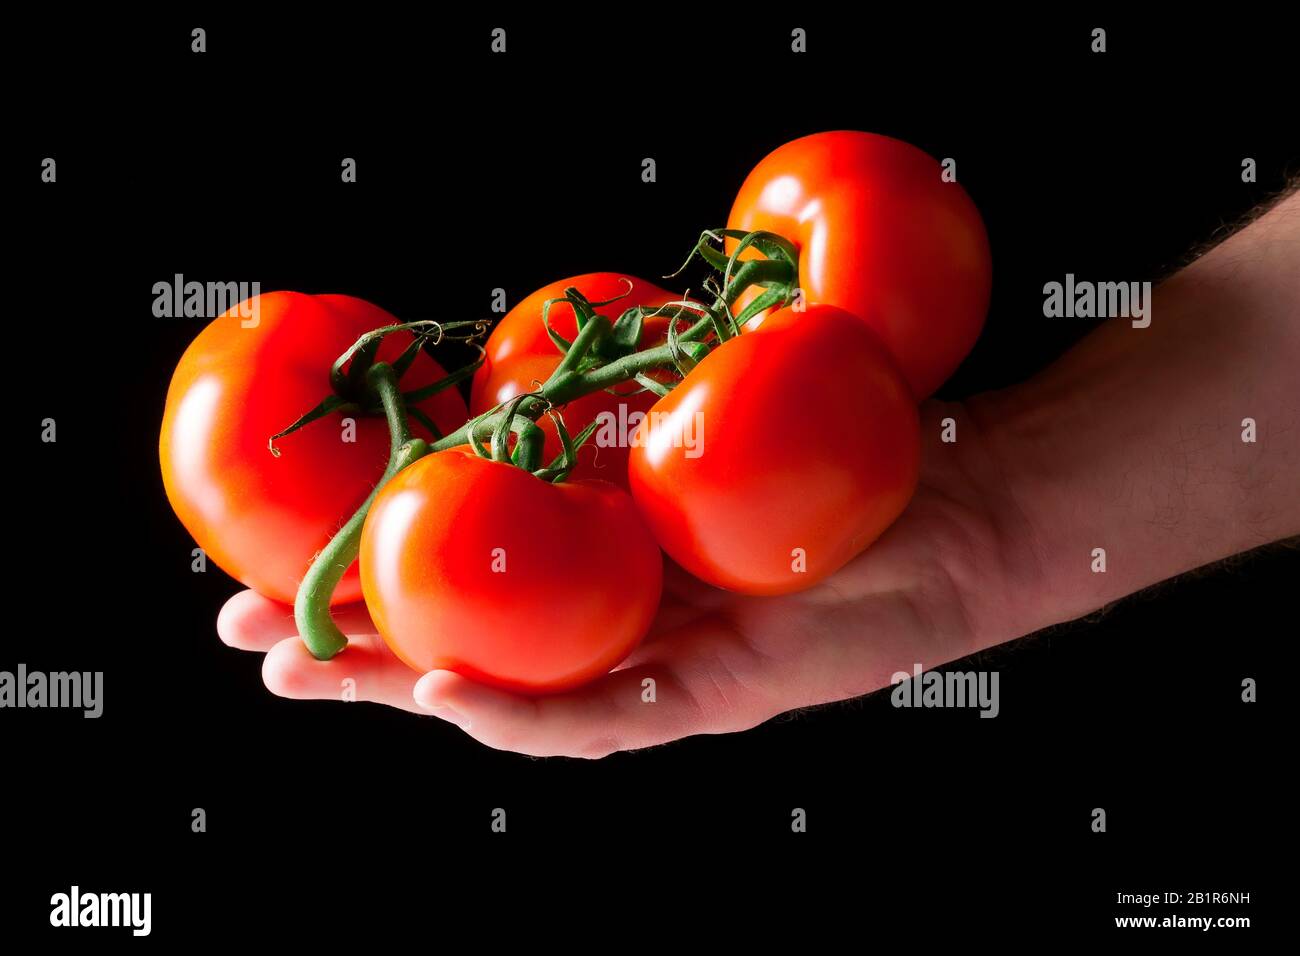 Tomate de jardin (Solanum lycopersicum, Lycopersicon esculentum), tomates dans la main Banque D'Images